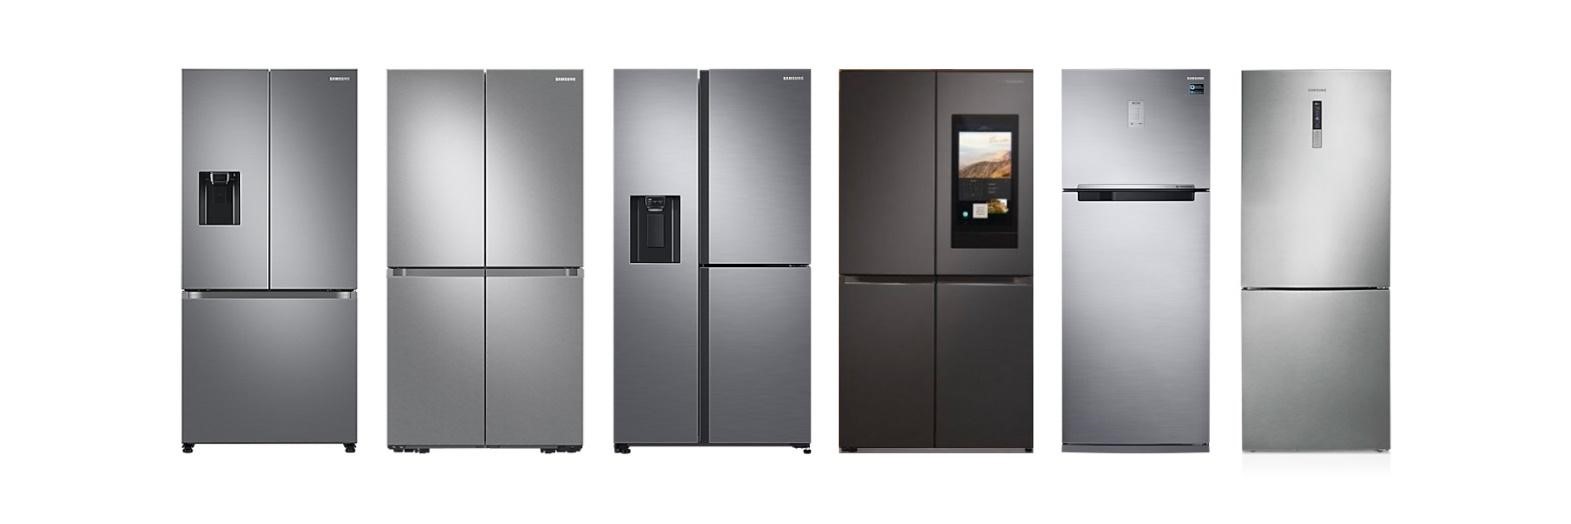 Foto de 4 recursos de los refrigeradores Samsung que te ayudarán a tener un estilo de vida saludable